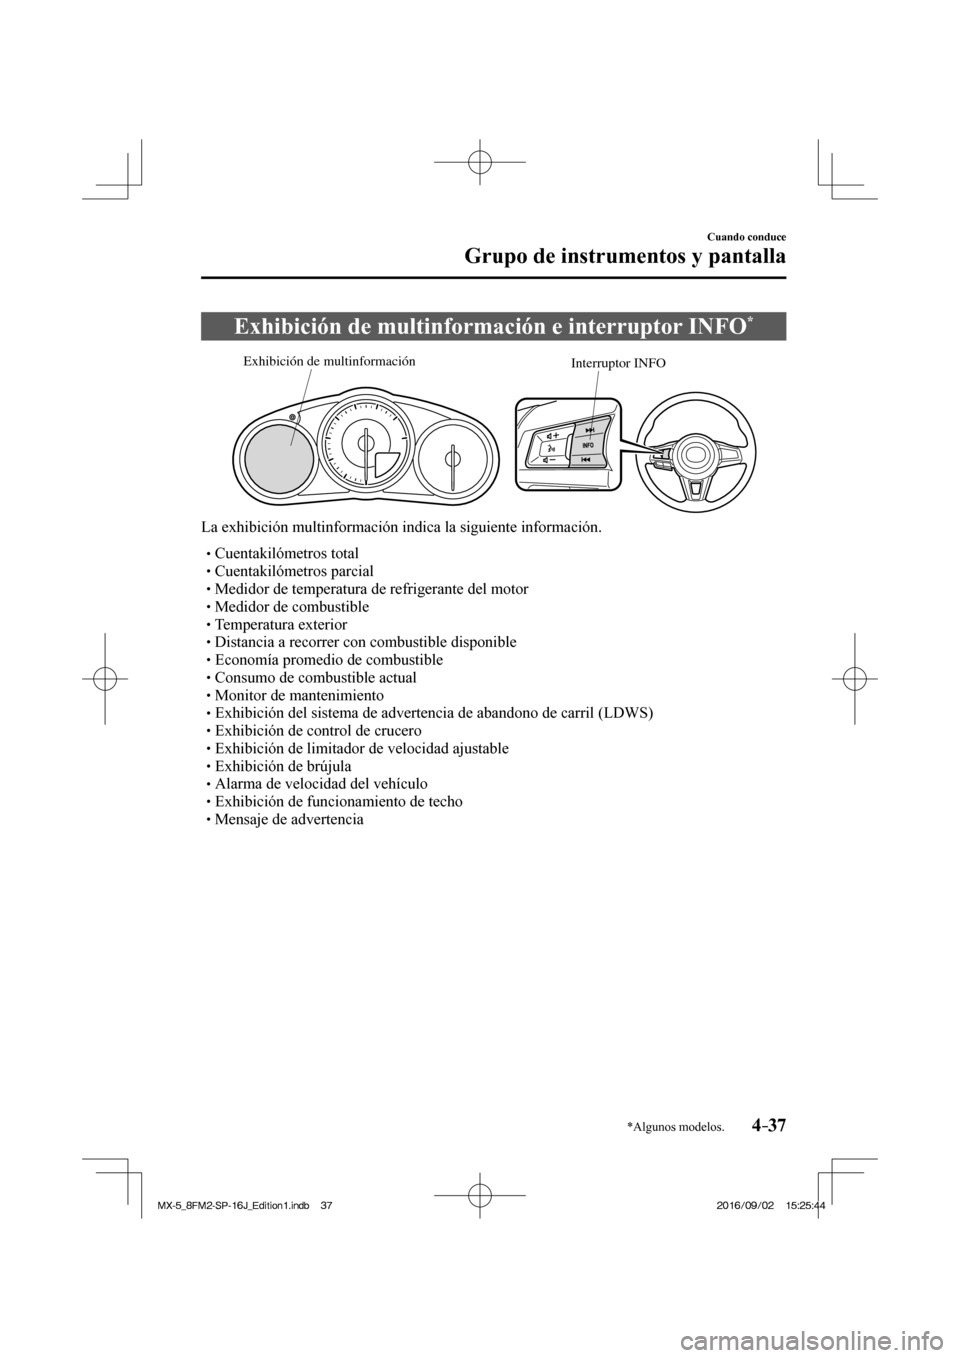 MAZDA MODEL MX-5 2018  Manual del propietario (in Spanish) 4–37
Cuando conduce
Grupo de instrumentos y pantalla
*Algunos modelos.
 Exhibición de multinformación e interruptor INFO * 
           
Interruptor INFO Exhibición de multinformación
 
  La exhi